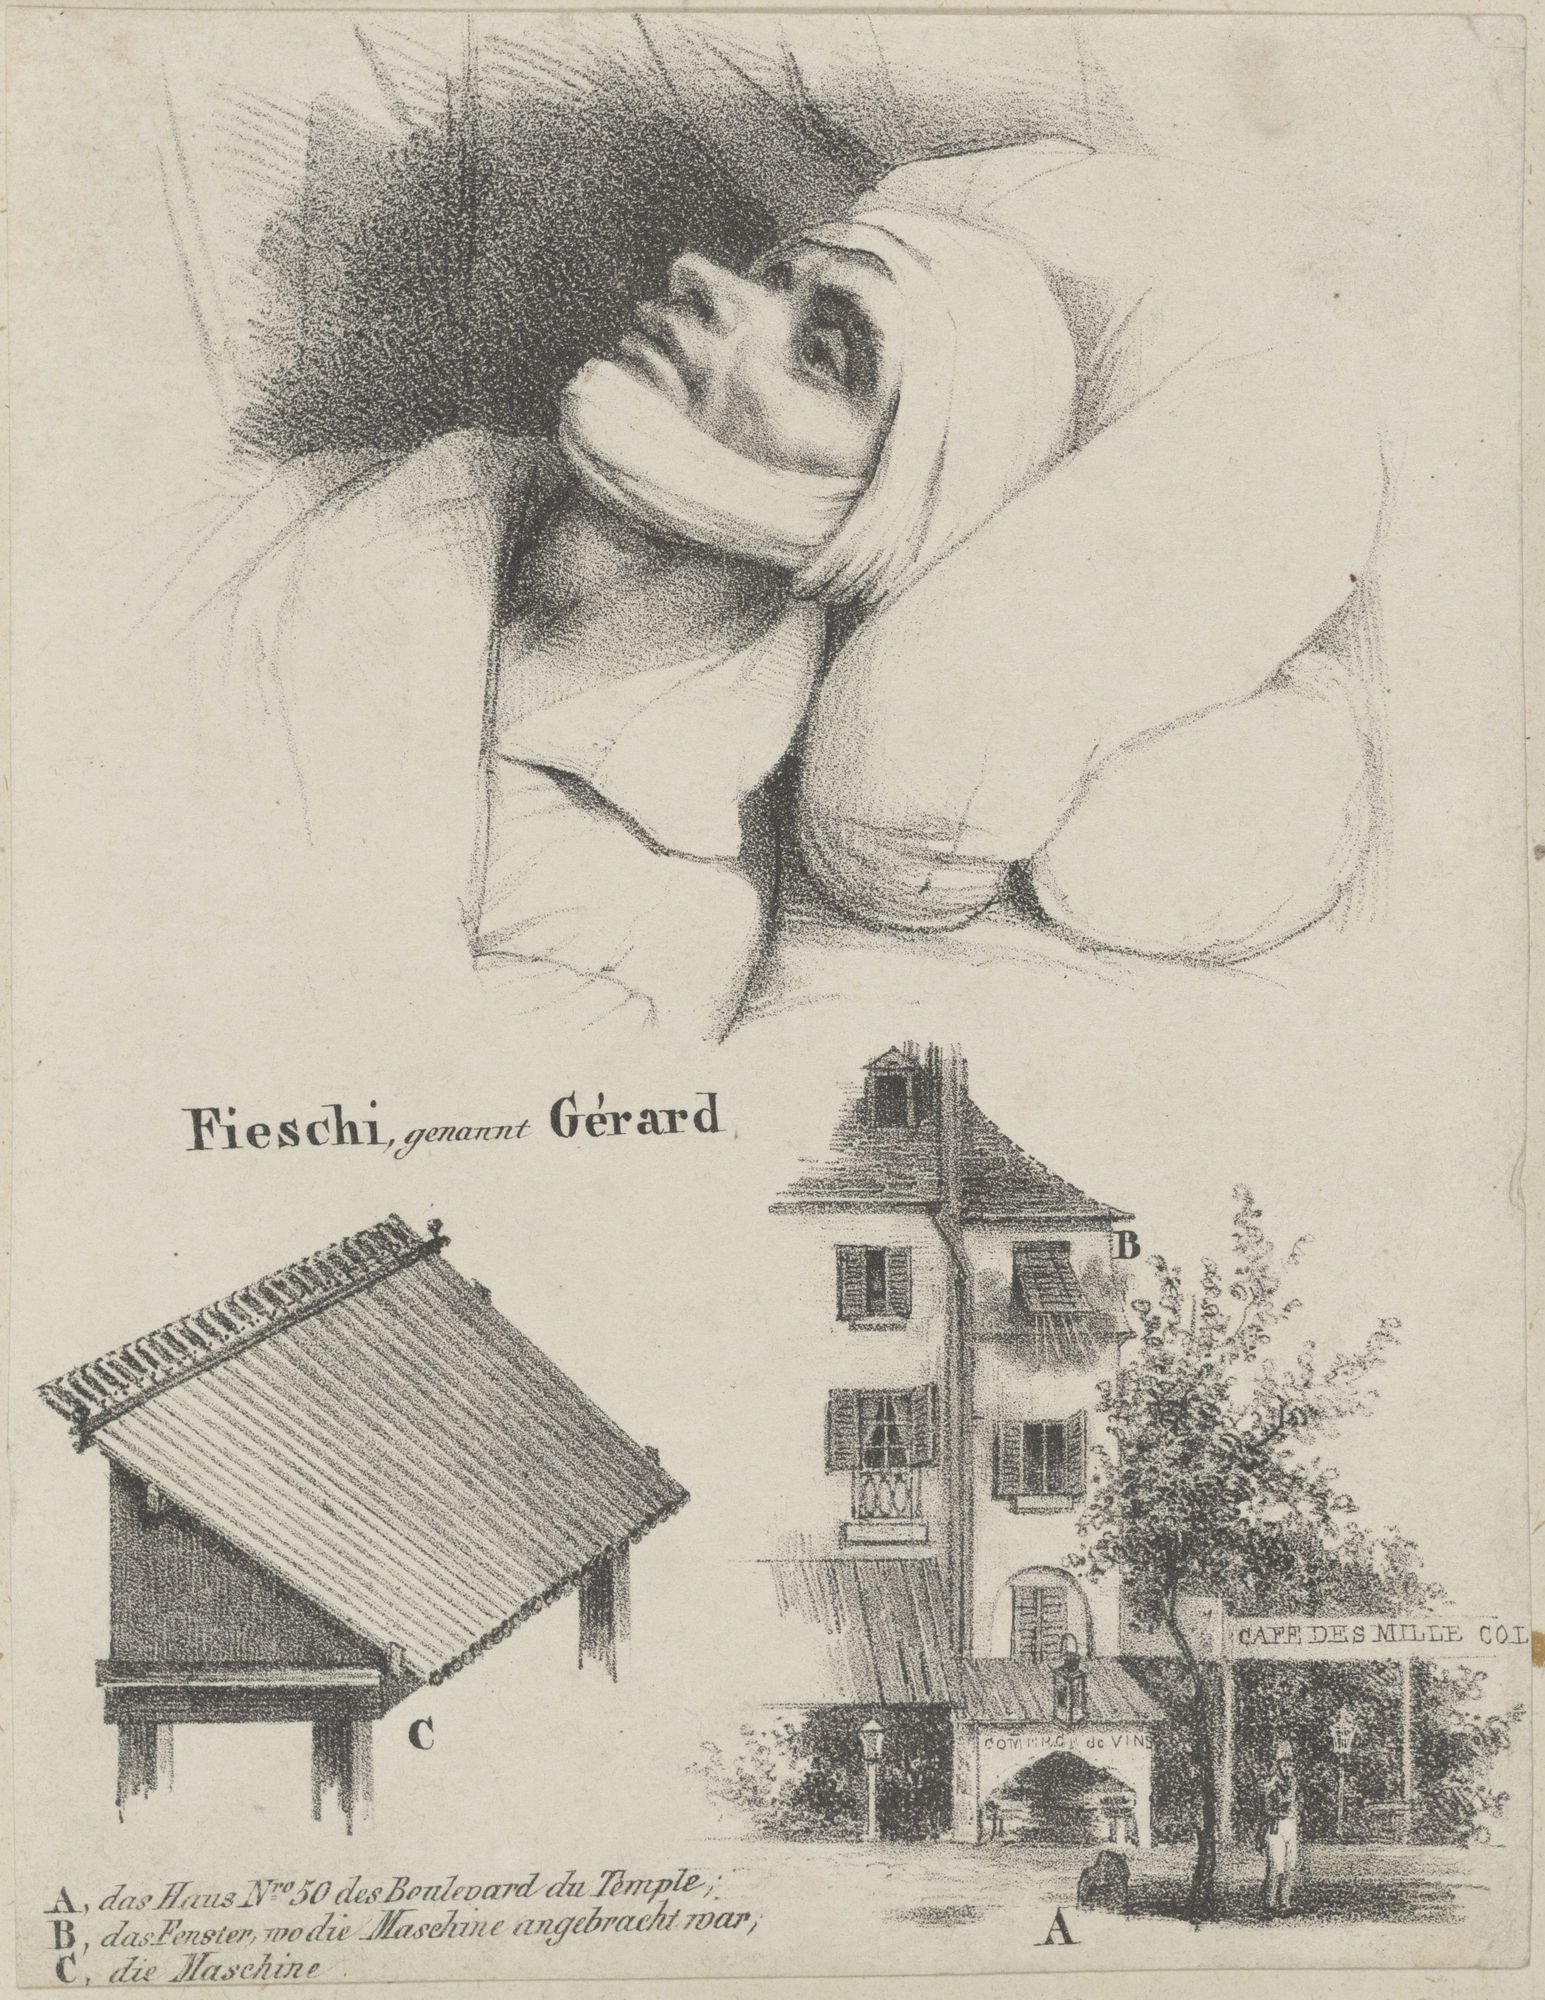 Fieschi, genannt Gérard (Kulturstiftung Sachsen-Anhalt Public Domain Mark)